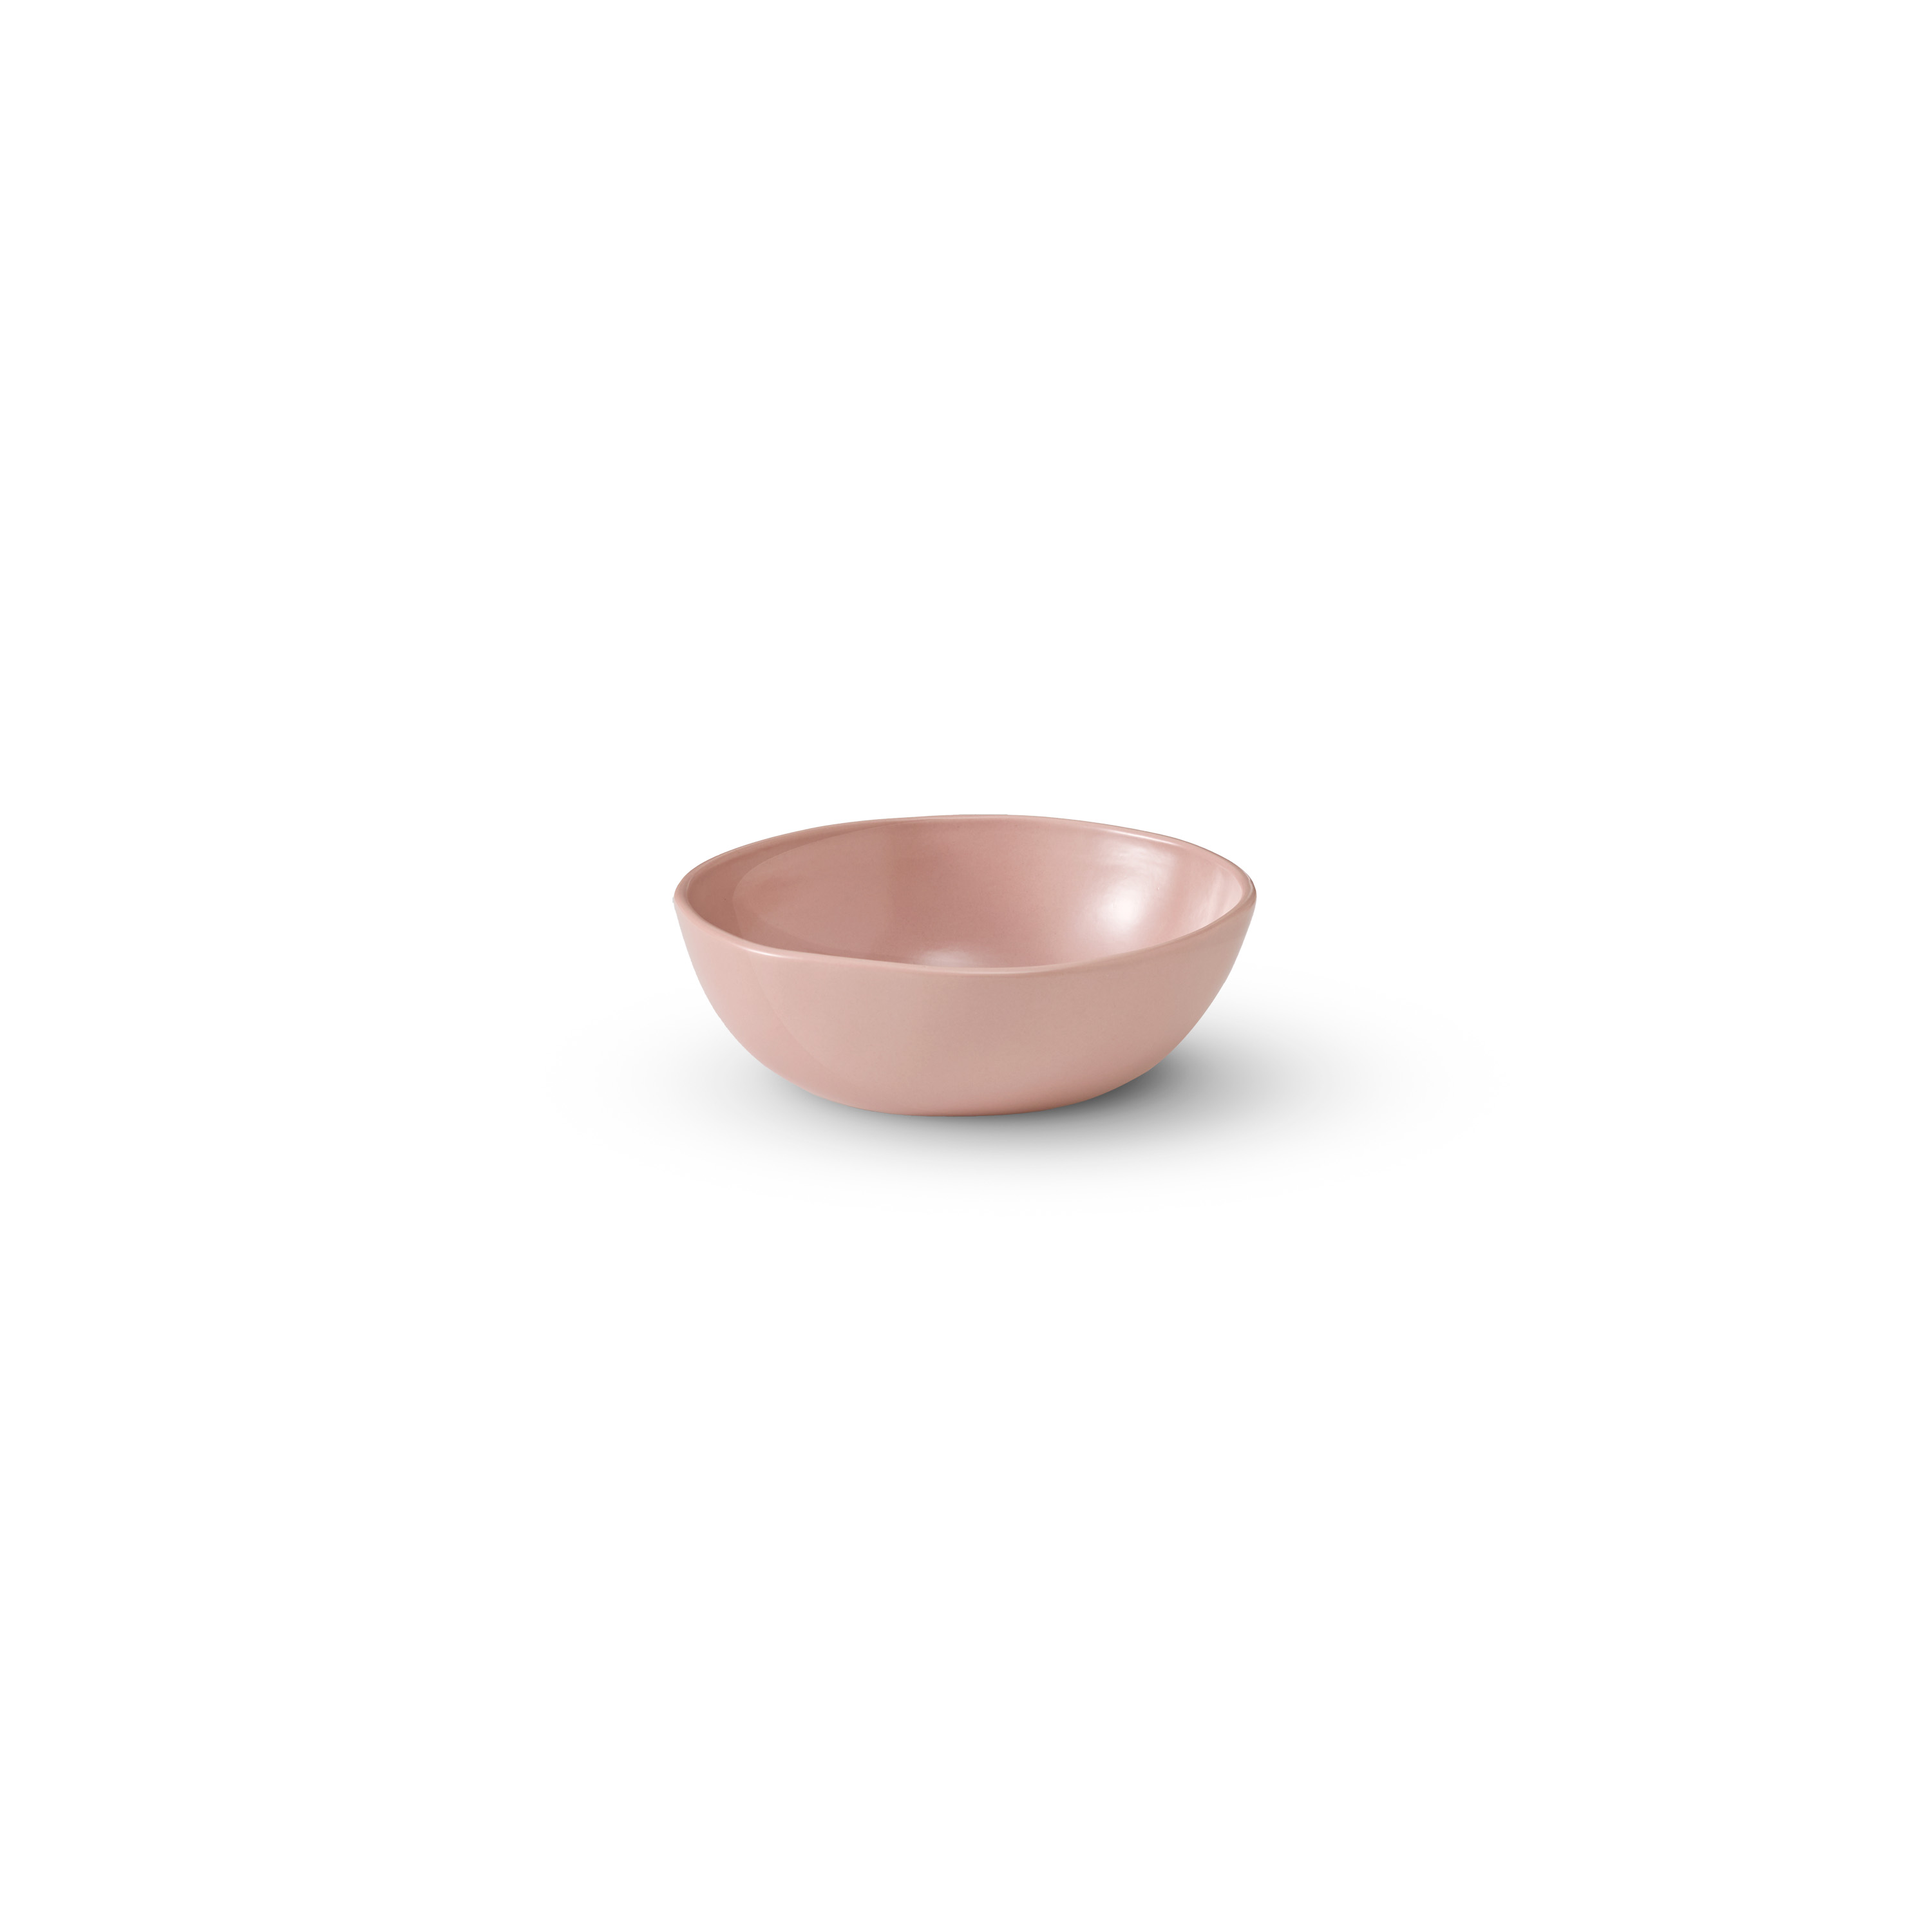 Tonkin Bowl S: Dusty pink